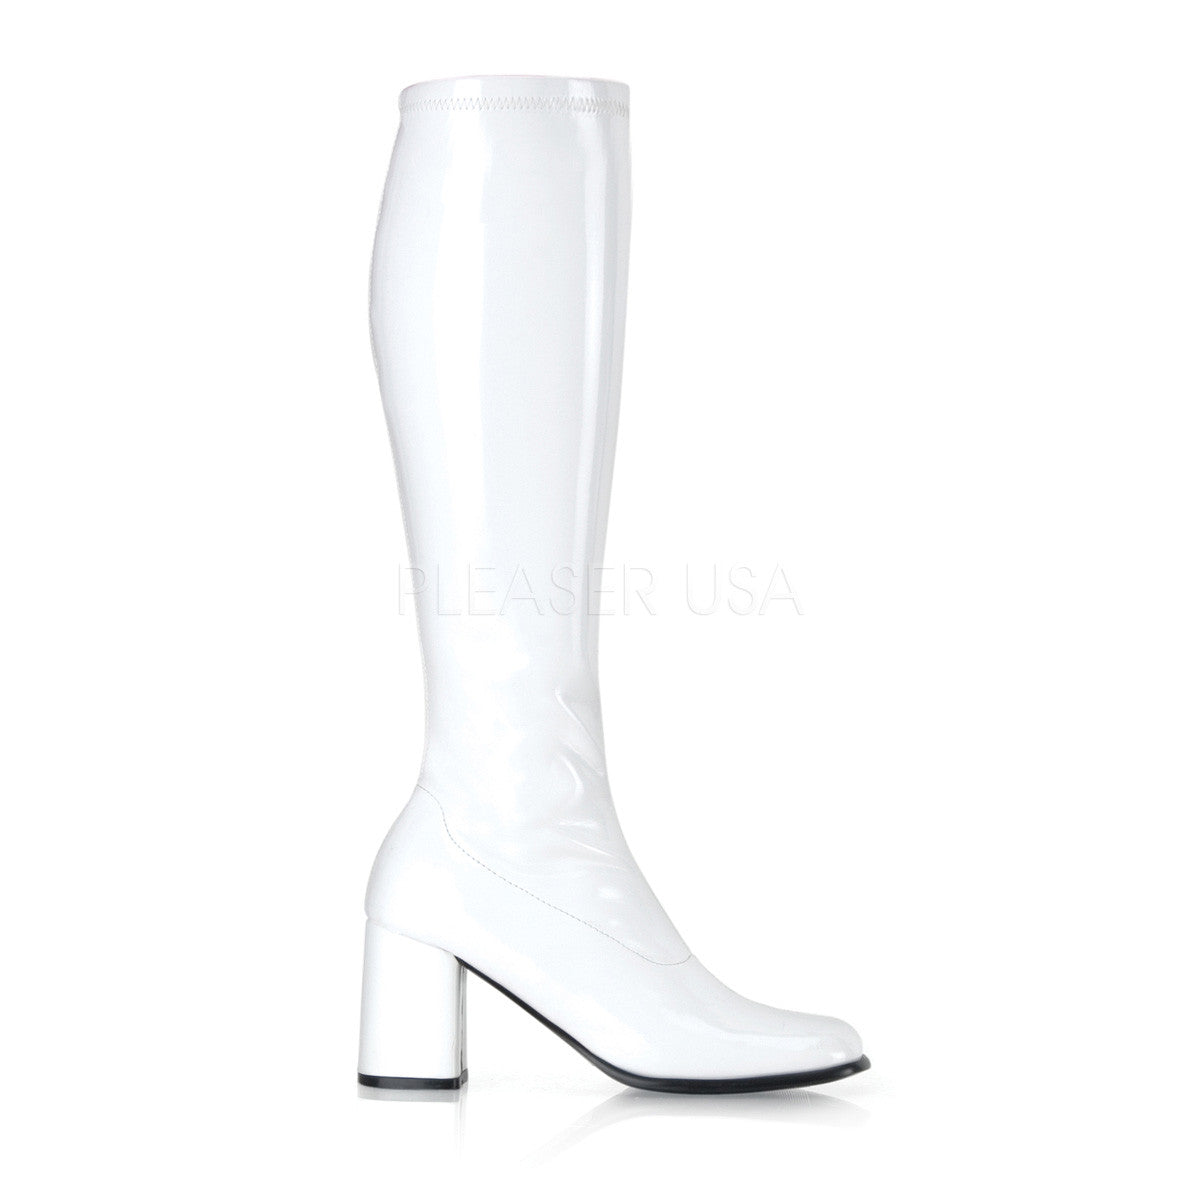 FUNTASMA GOGO-300 White Stretch Pat Gogo Boots - Shoecup.com